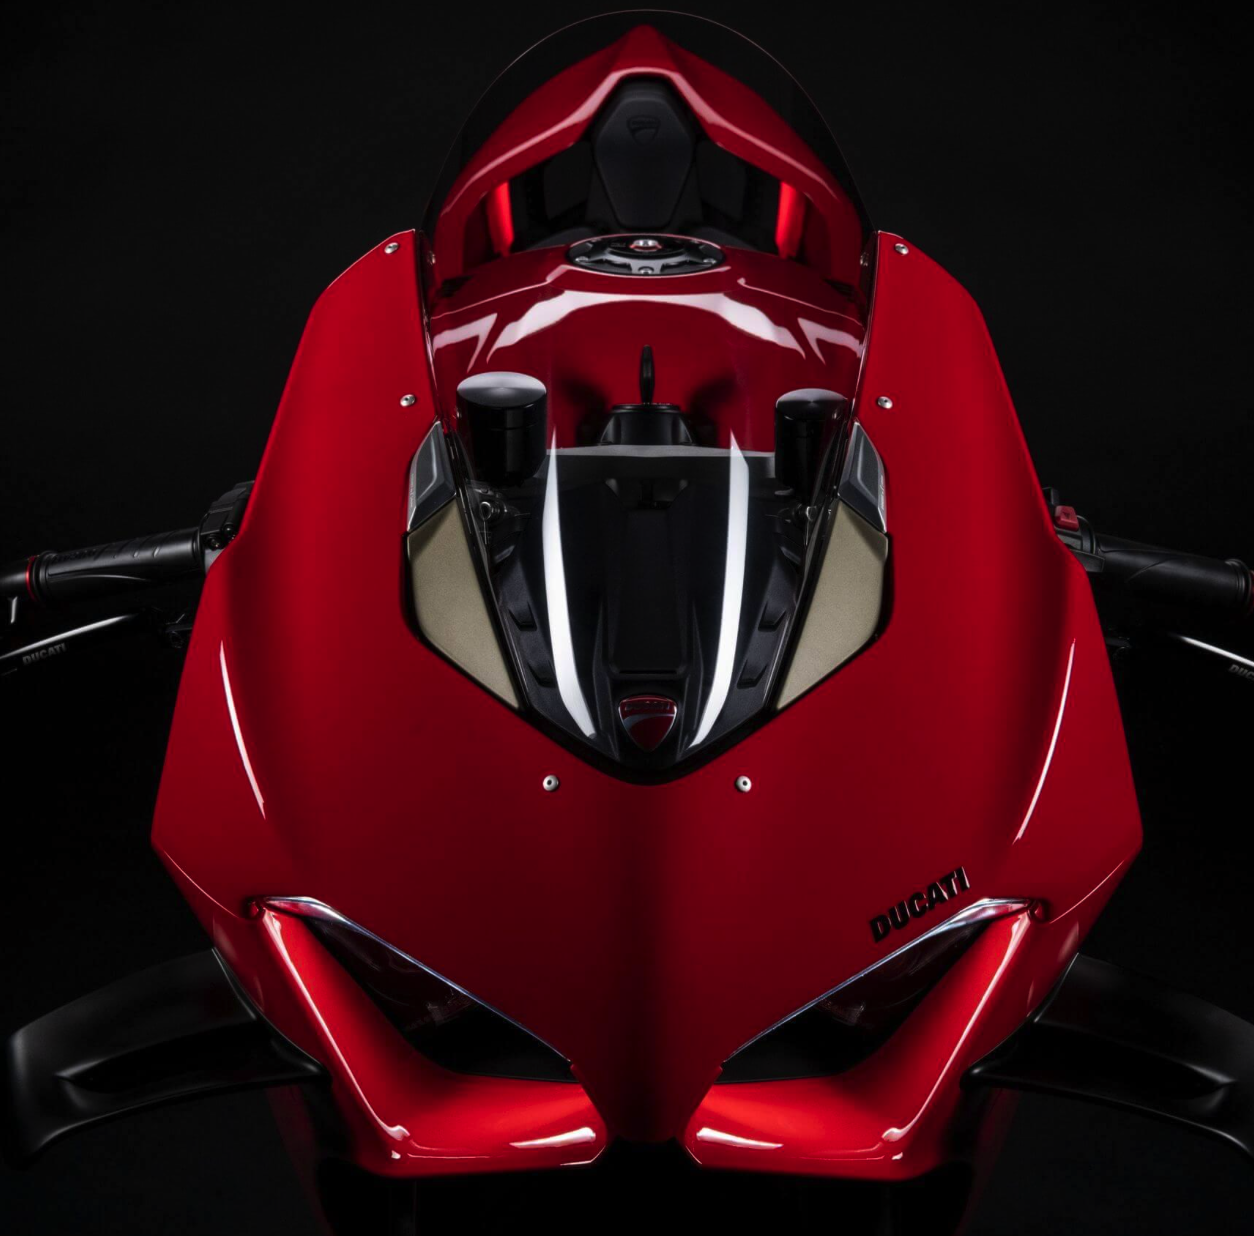 эксклюзивный доступ к последующим релизам NFT от Ducati